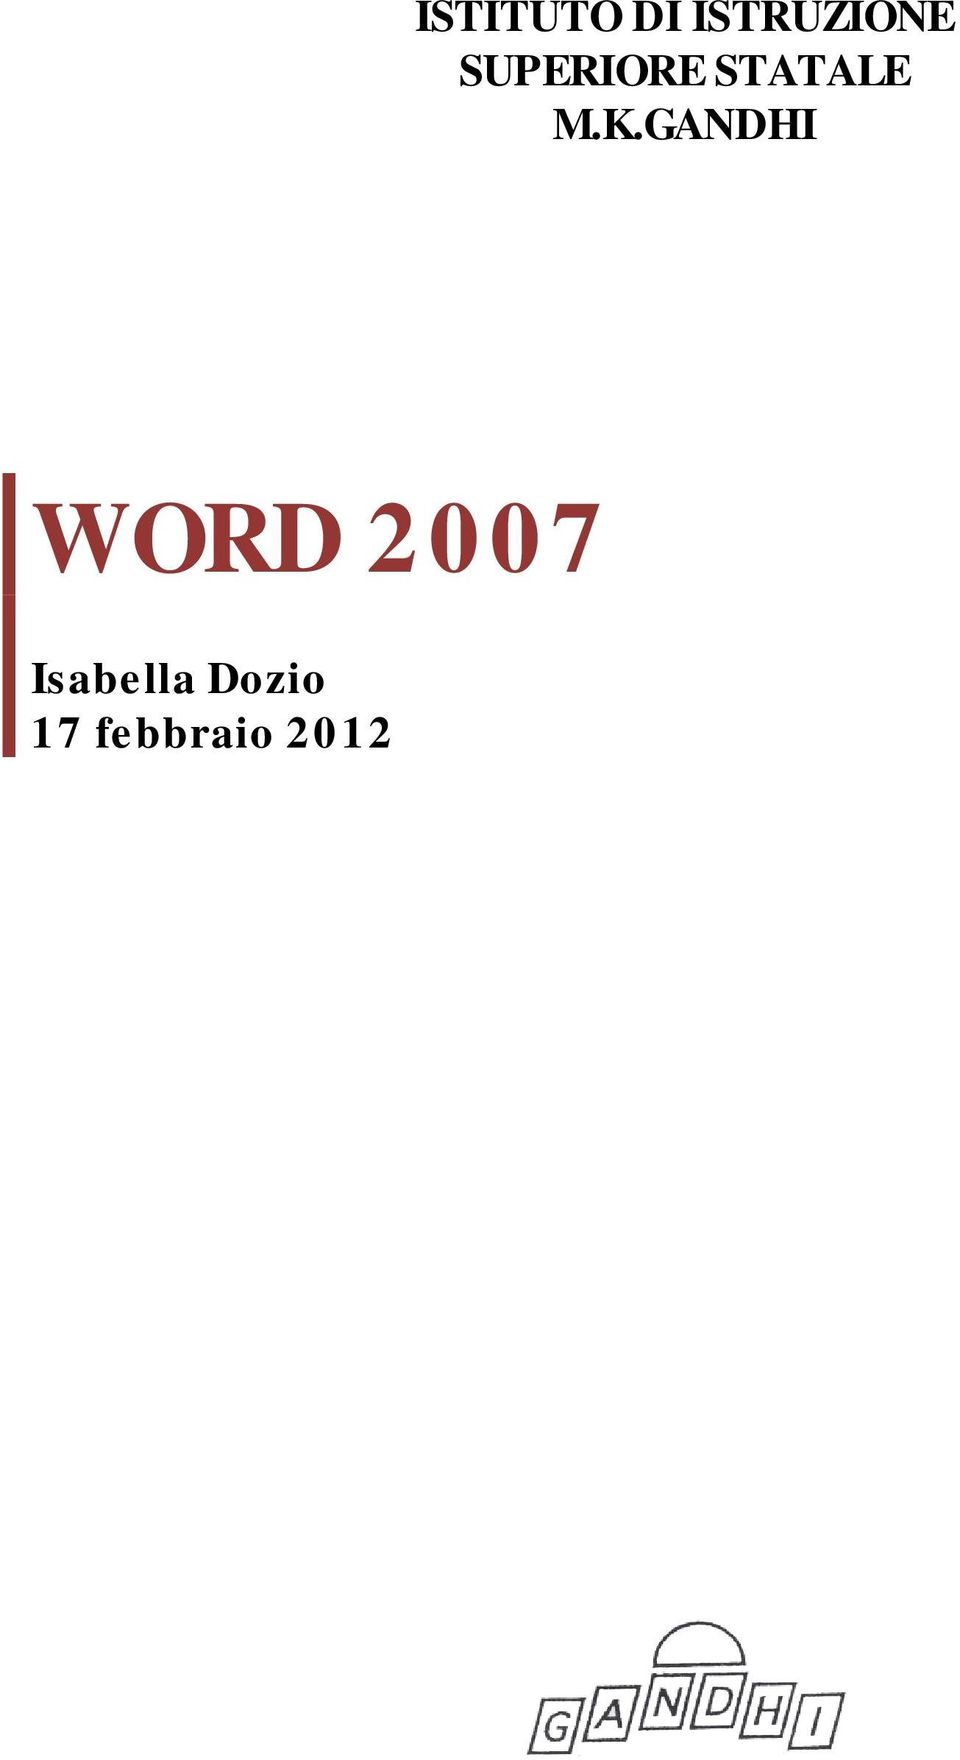 GANDHI WORD 2007